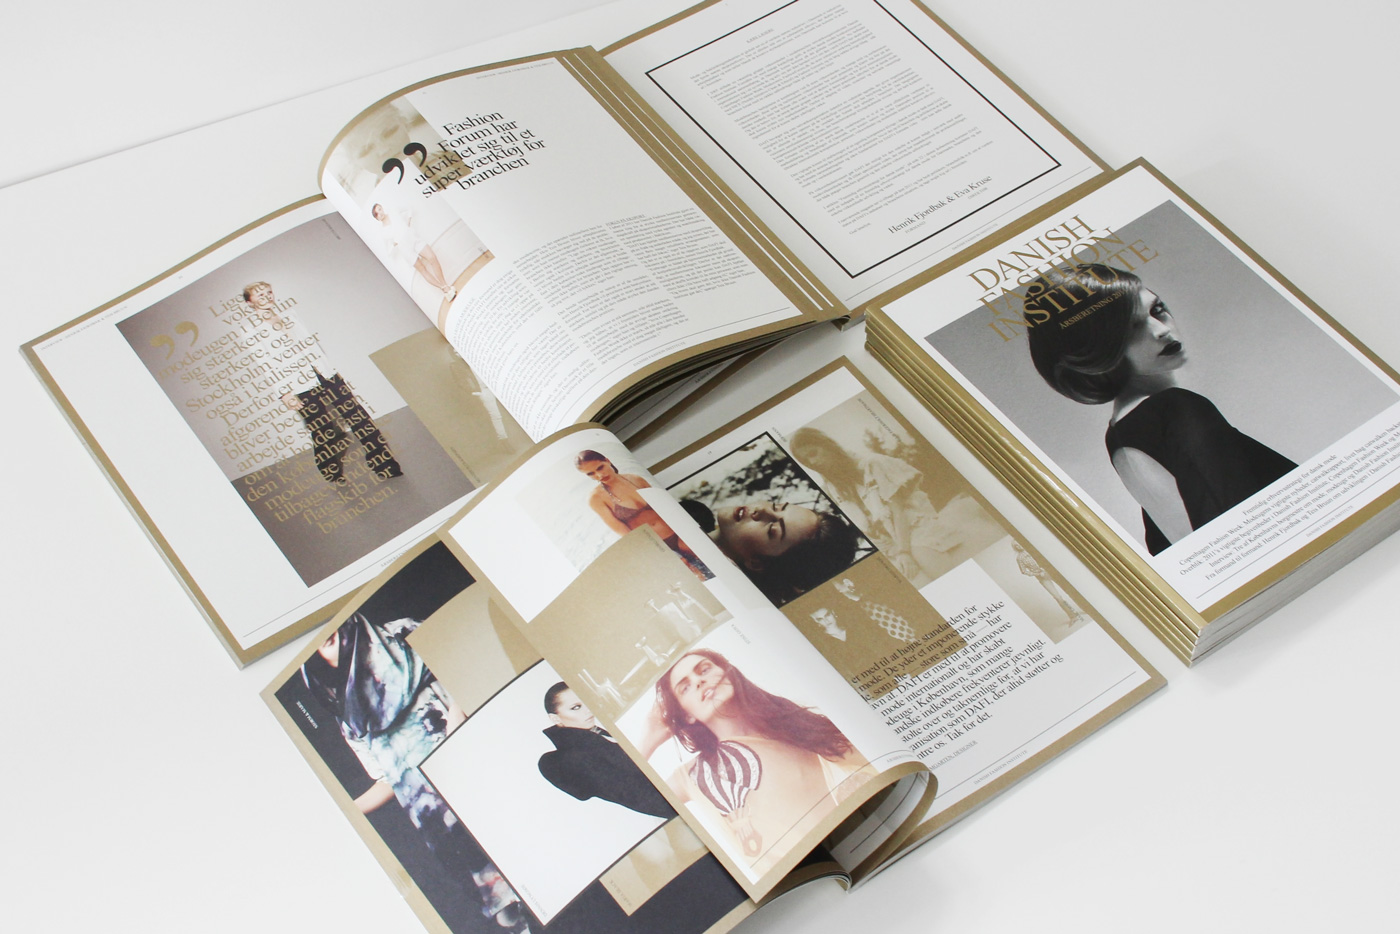 Danish Fashion Institute – Annual report 2011